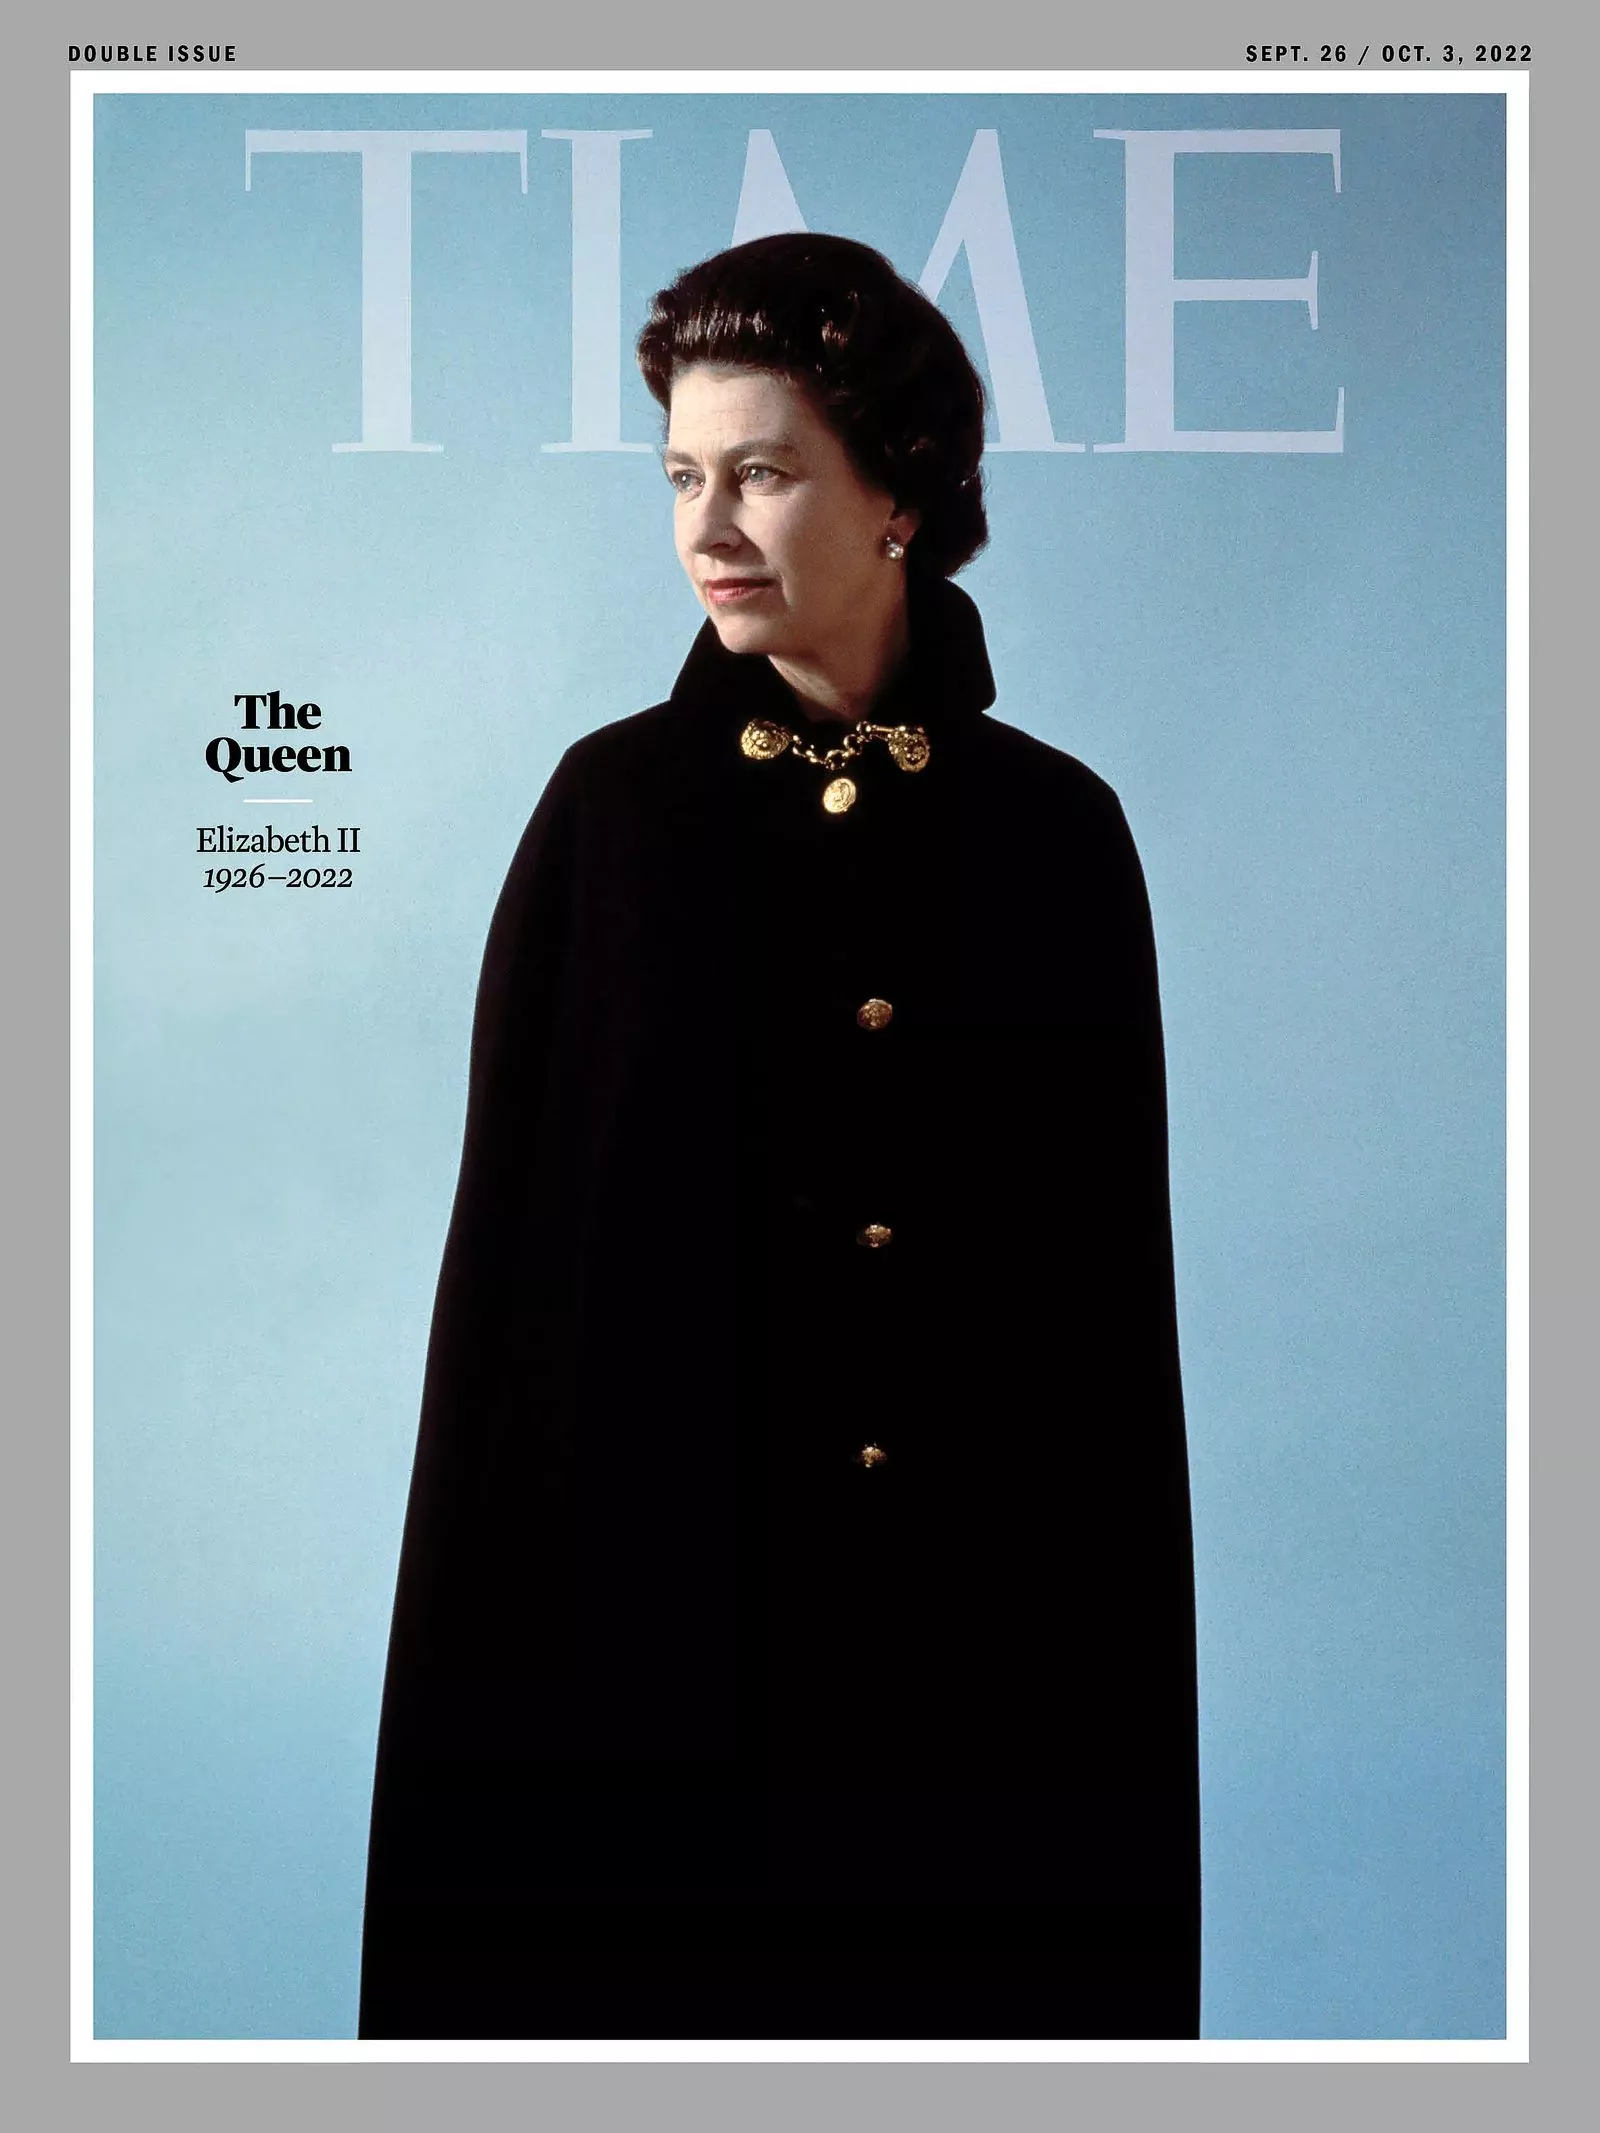 Королева Елизавета II на обложке журнала Times, сентябрь 2022 г.